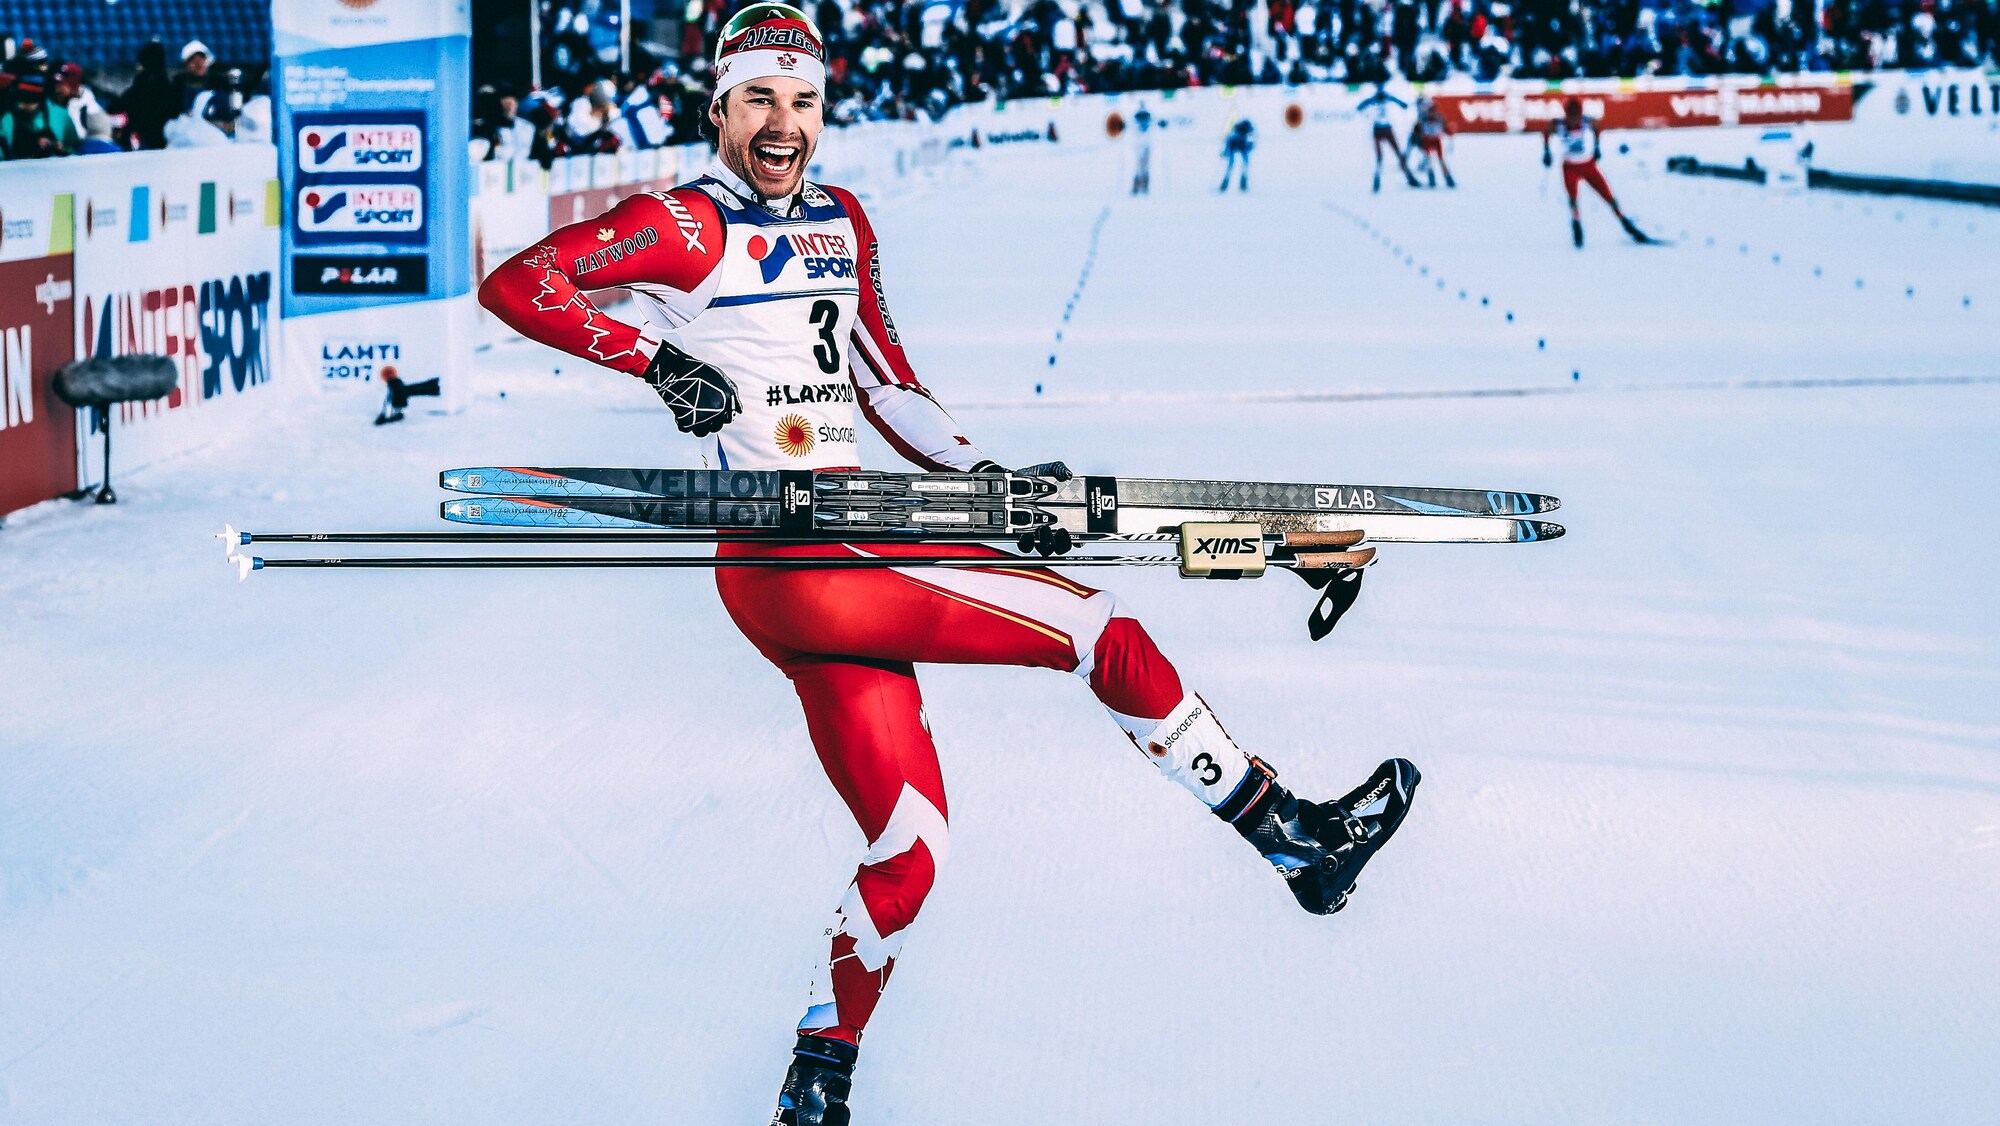 Alex Harvey célèbre sa victoire au 50 km départ groupé style libre aux Championnats du monde à Lahti, en Finlande, en mars 2017.